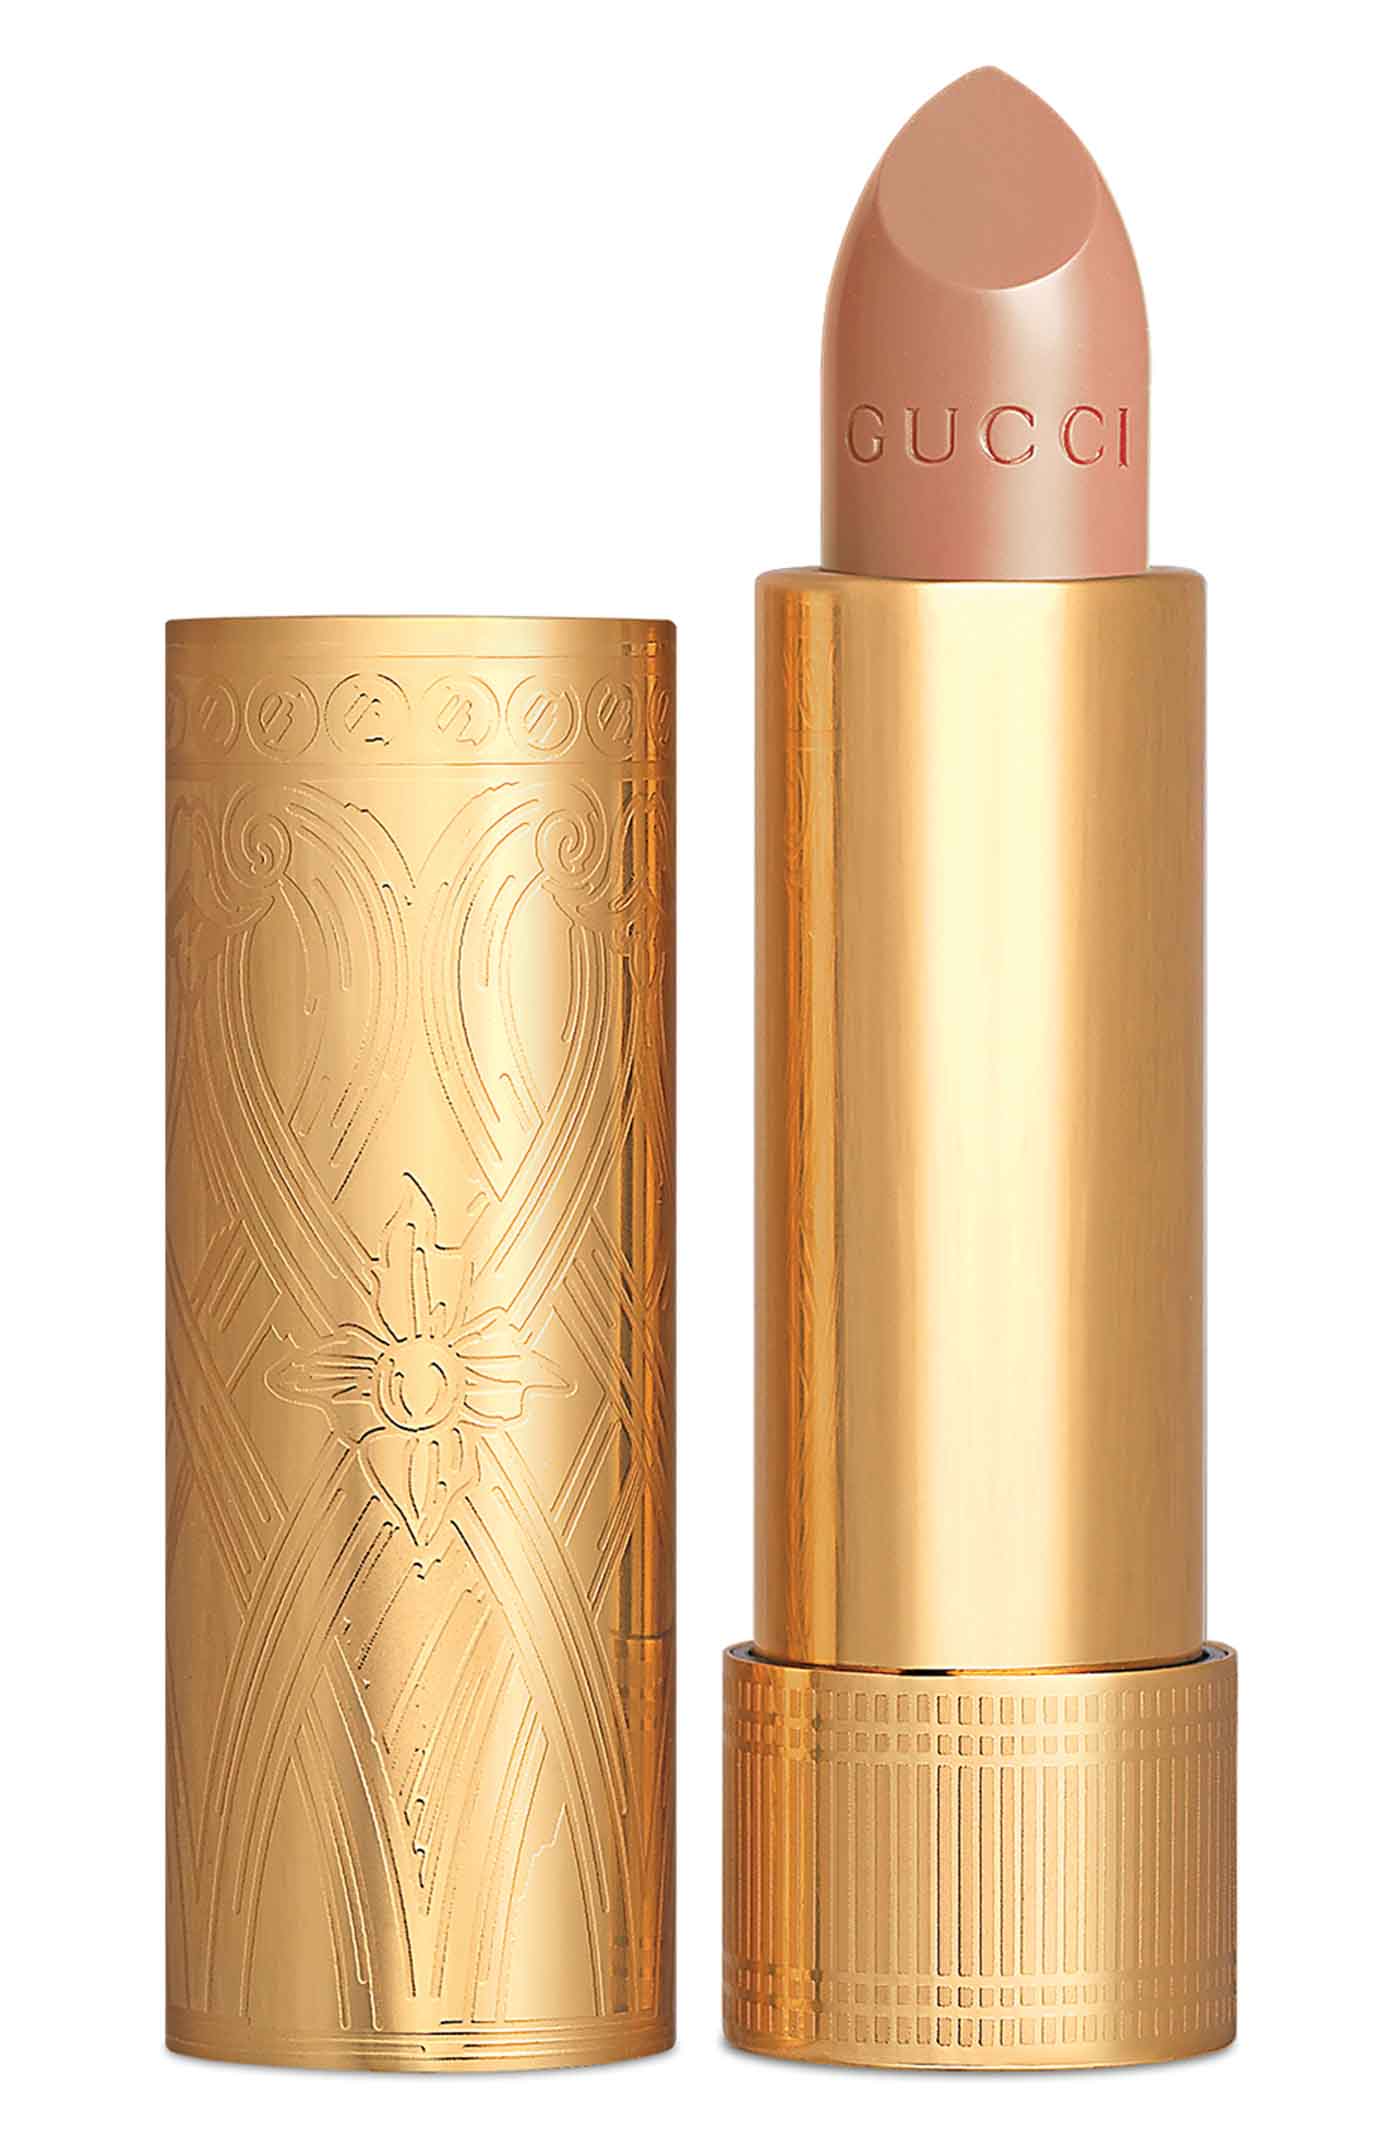 26 Gucci, Rouge À Lèvres Satin Lipstick In Linda Beige, Nordstrom.com